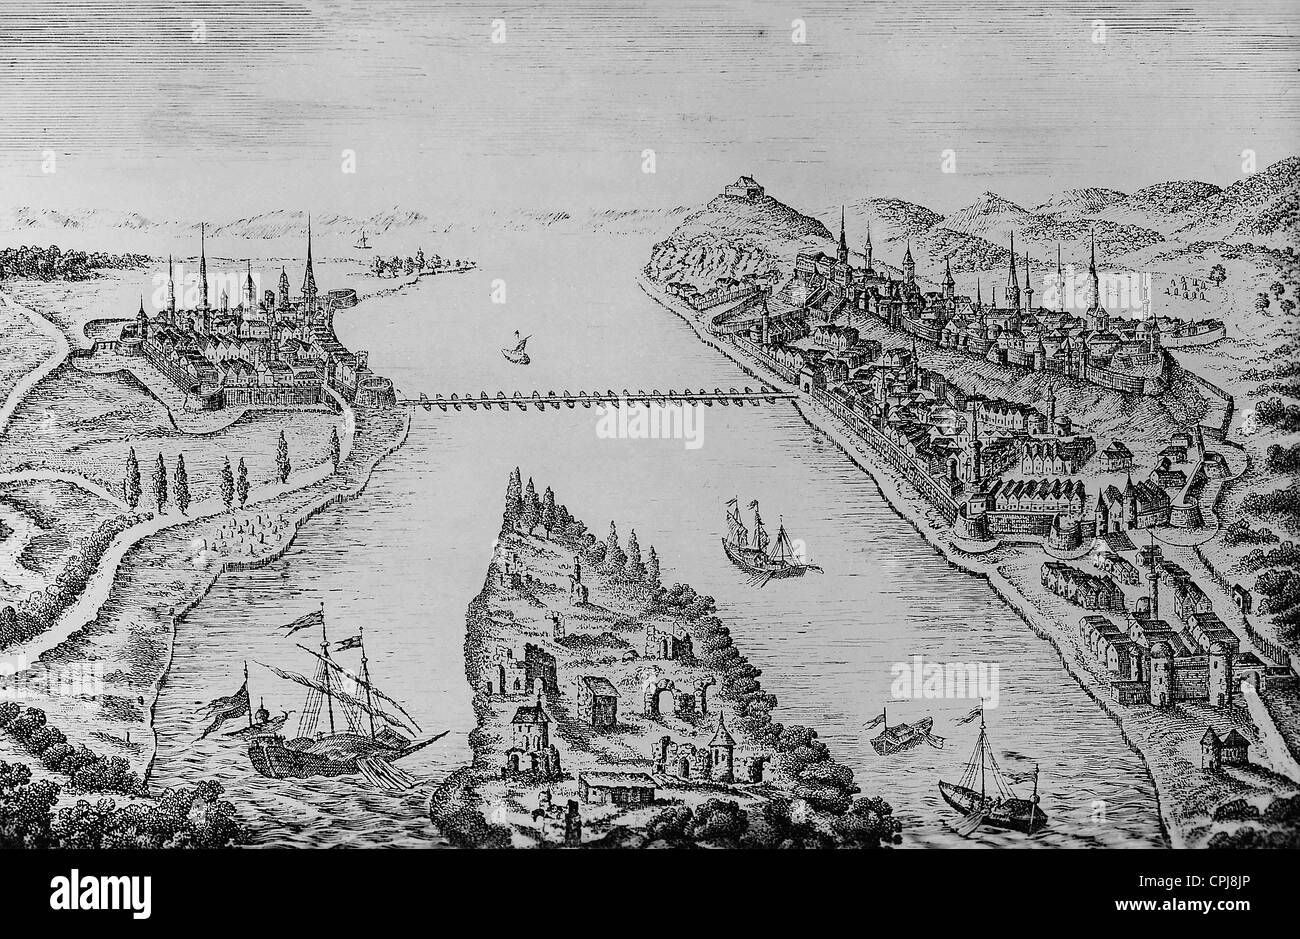 Buda et Pest au 17e siècle Banque D'Images